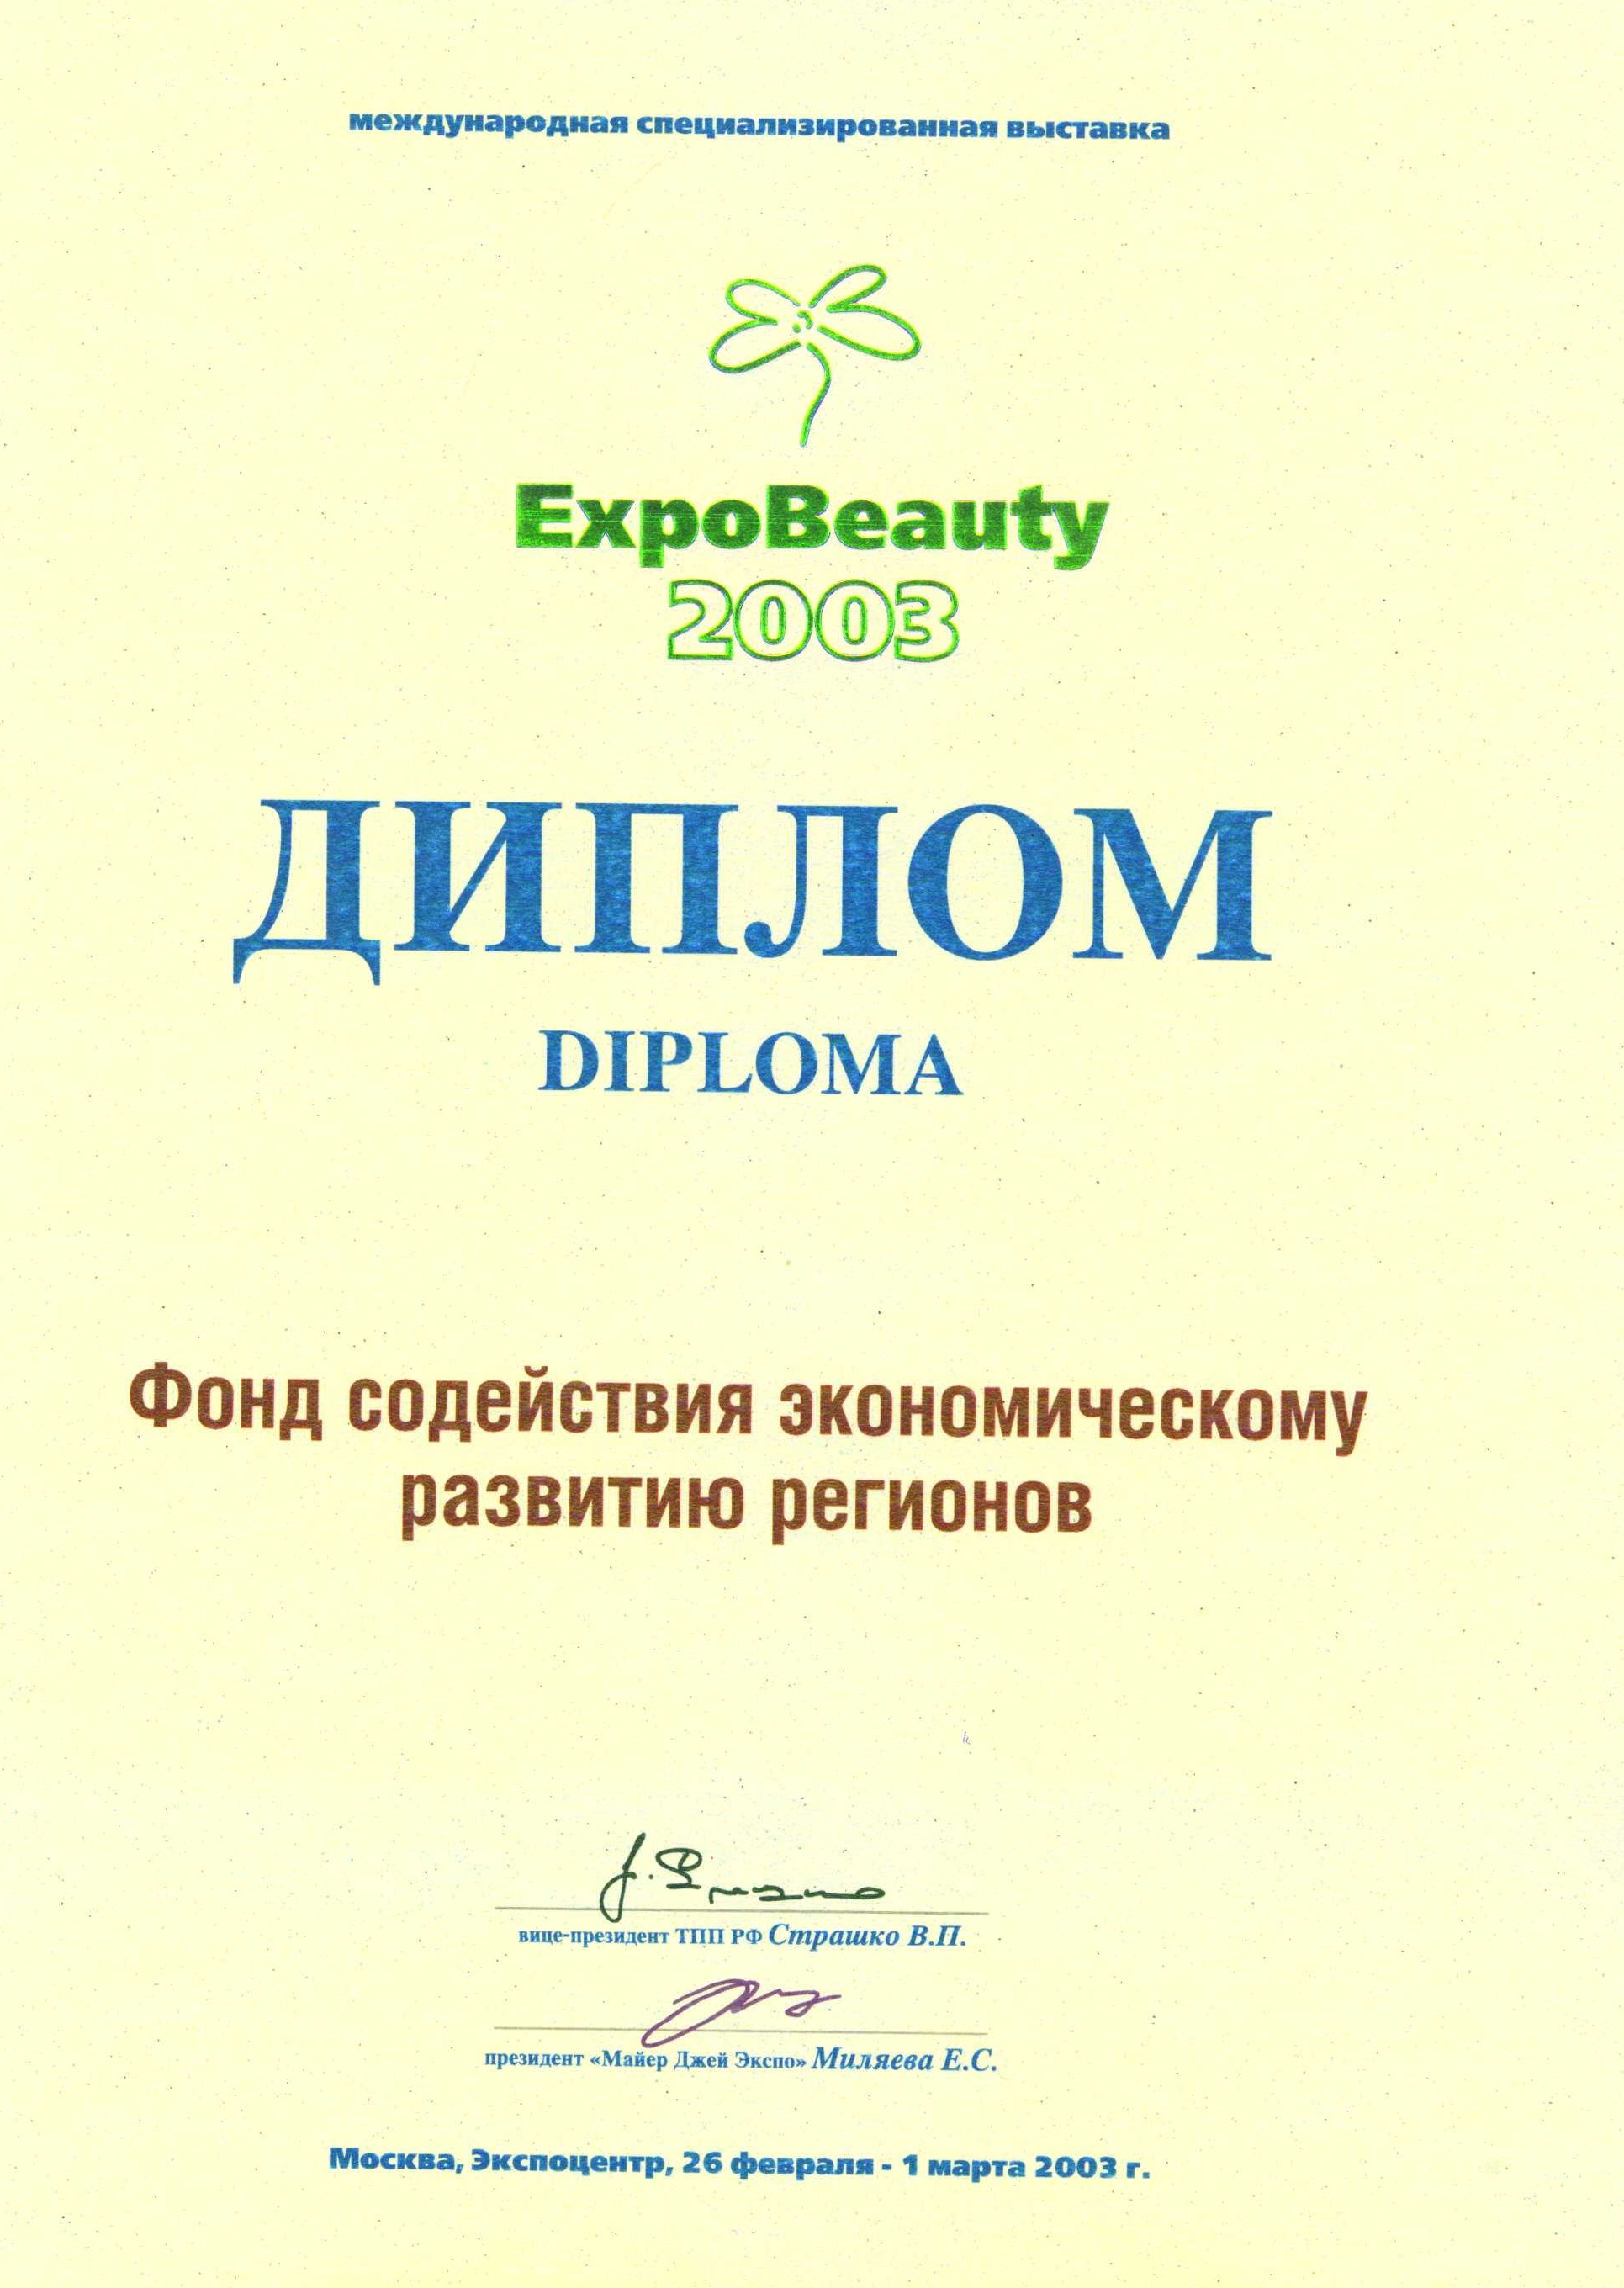 Участник выставки EXPOBeauty 2003